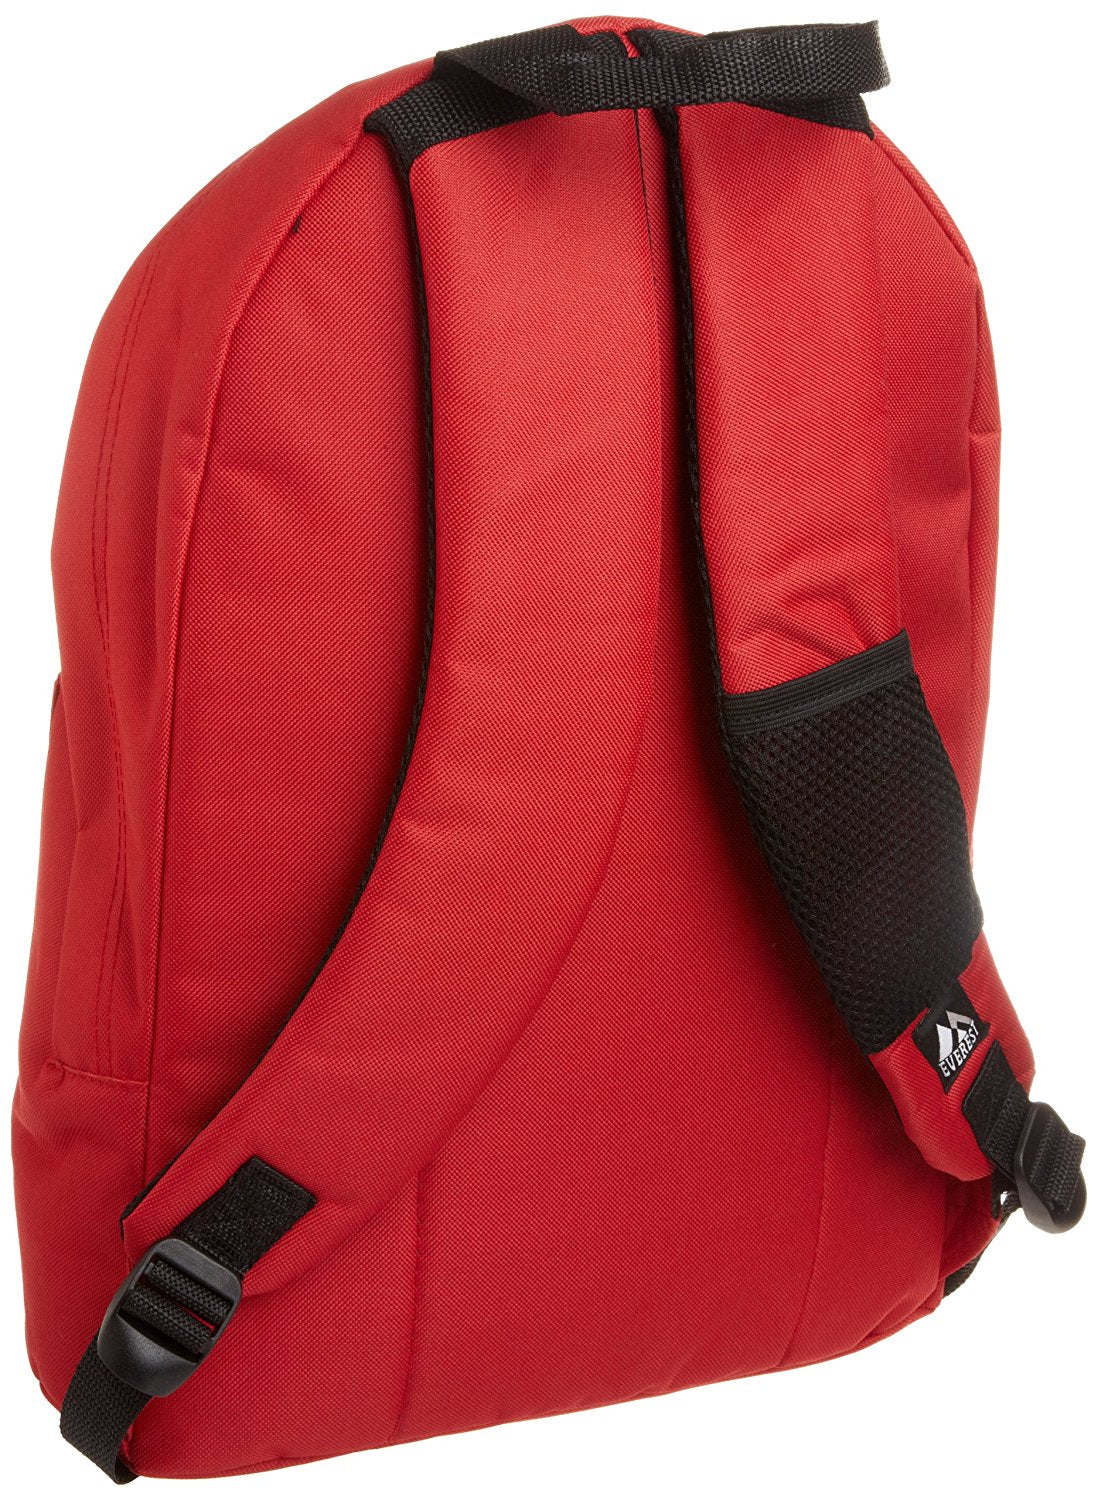 Everest Luggage Stylish Backpack